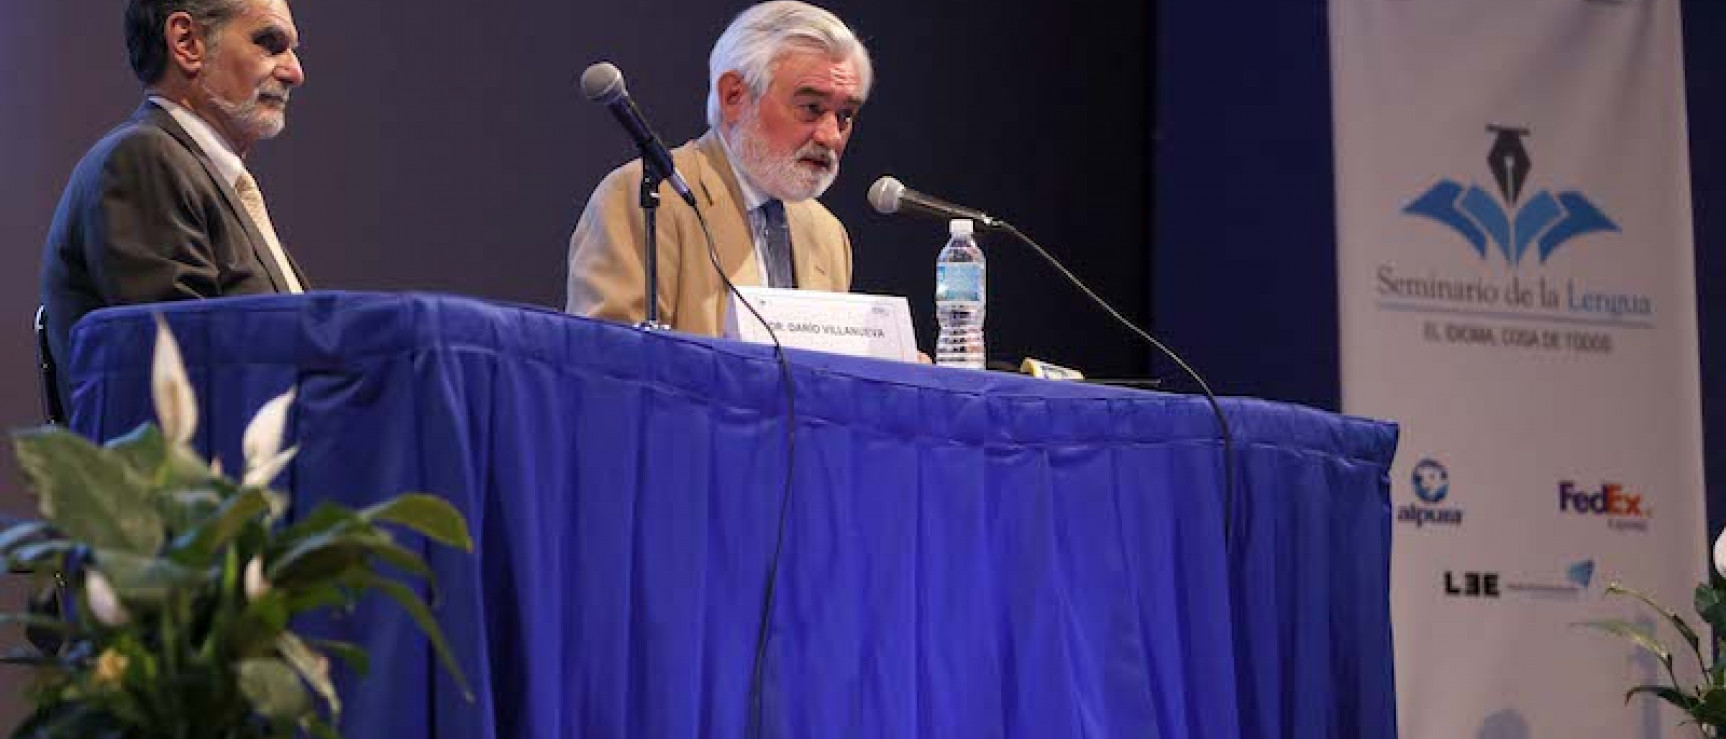 Darío Villanueva durante la conferencia. Foto: CANIEM.